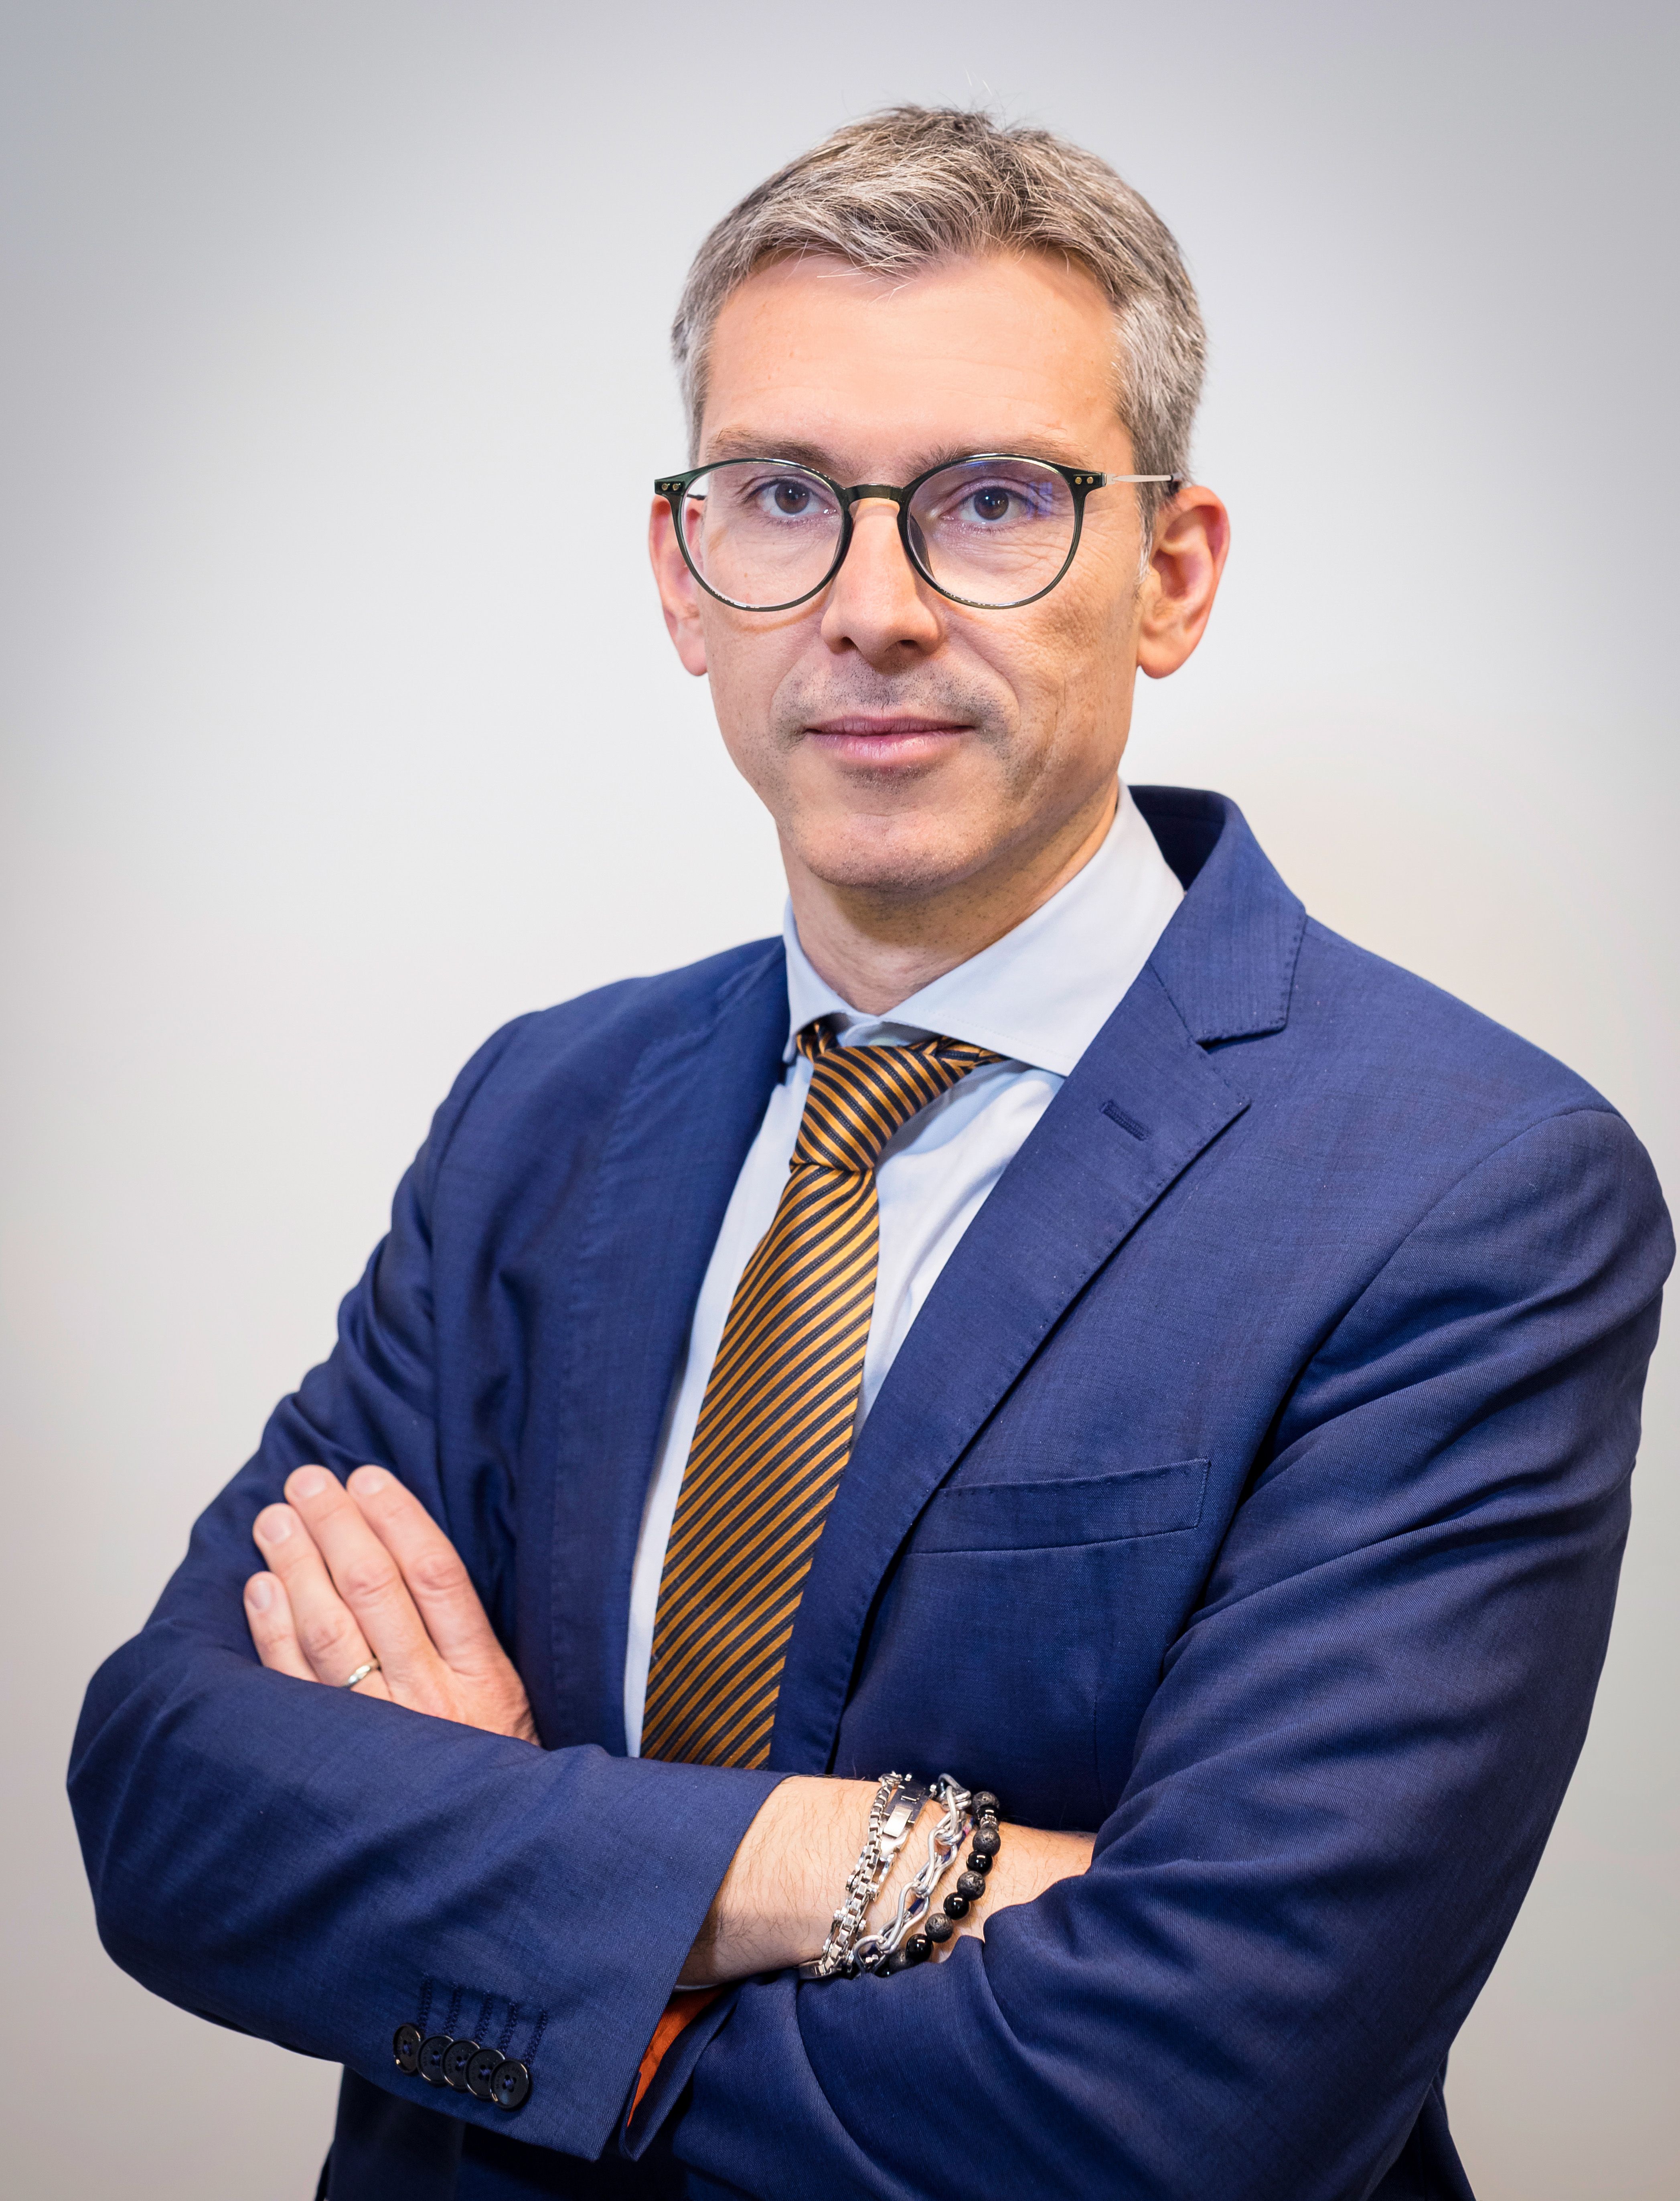 Marco Olivieri es el nuevo Director Regional de Ventas del Sur de Europa de Cambium Networks